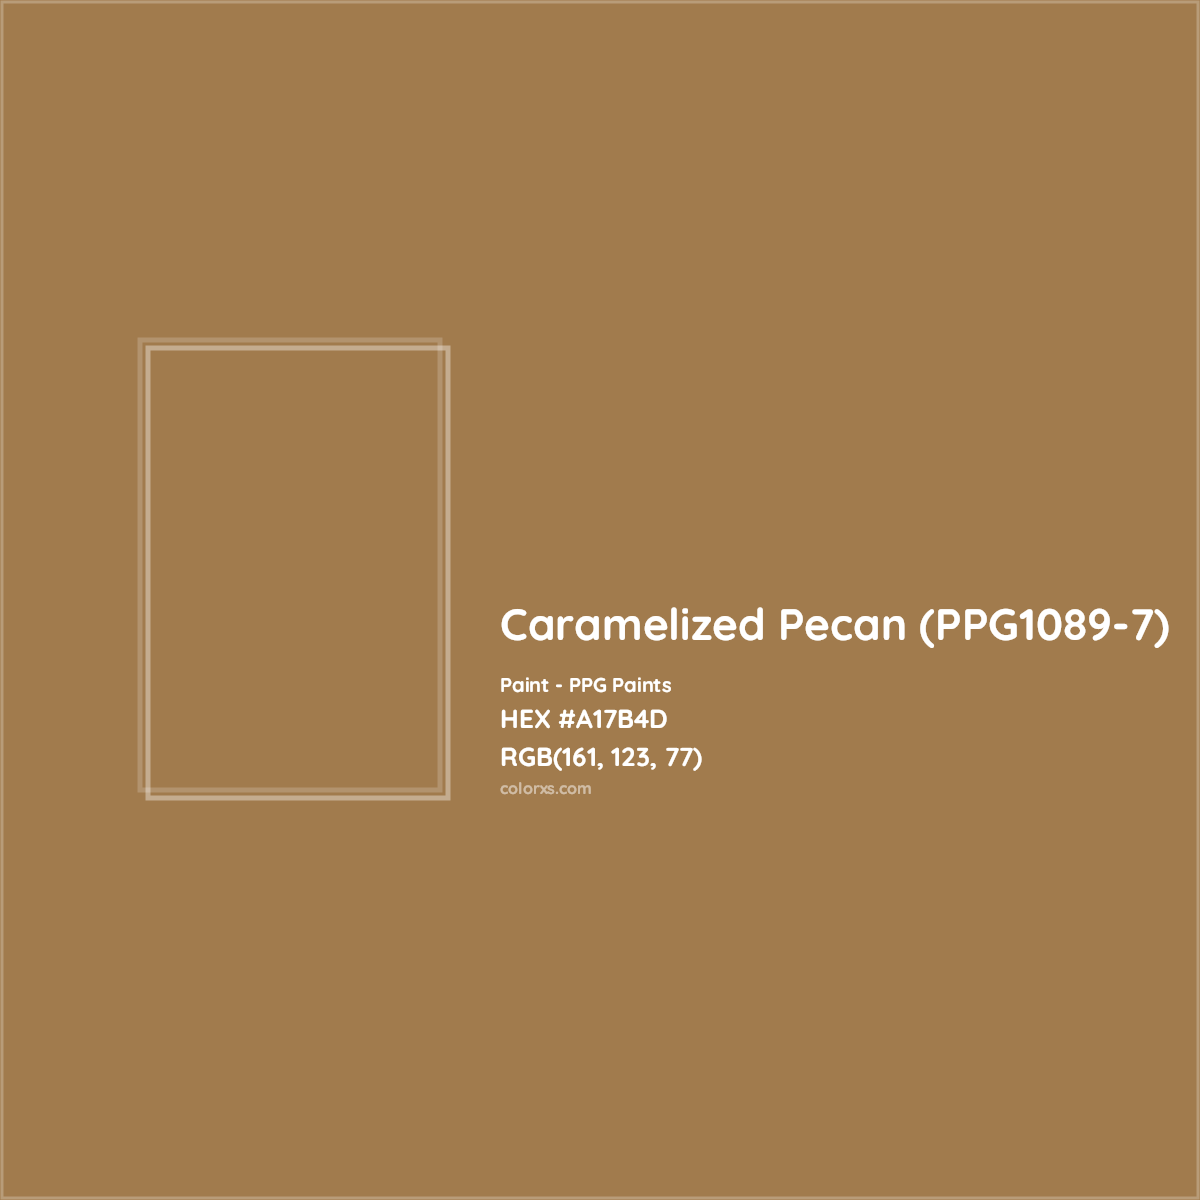 HEX #A17B4D Caramelized Pecan (PPG1089-7) Paint PPG Paints - Color Code